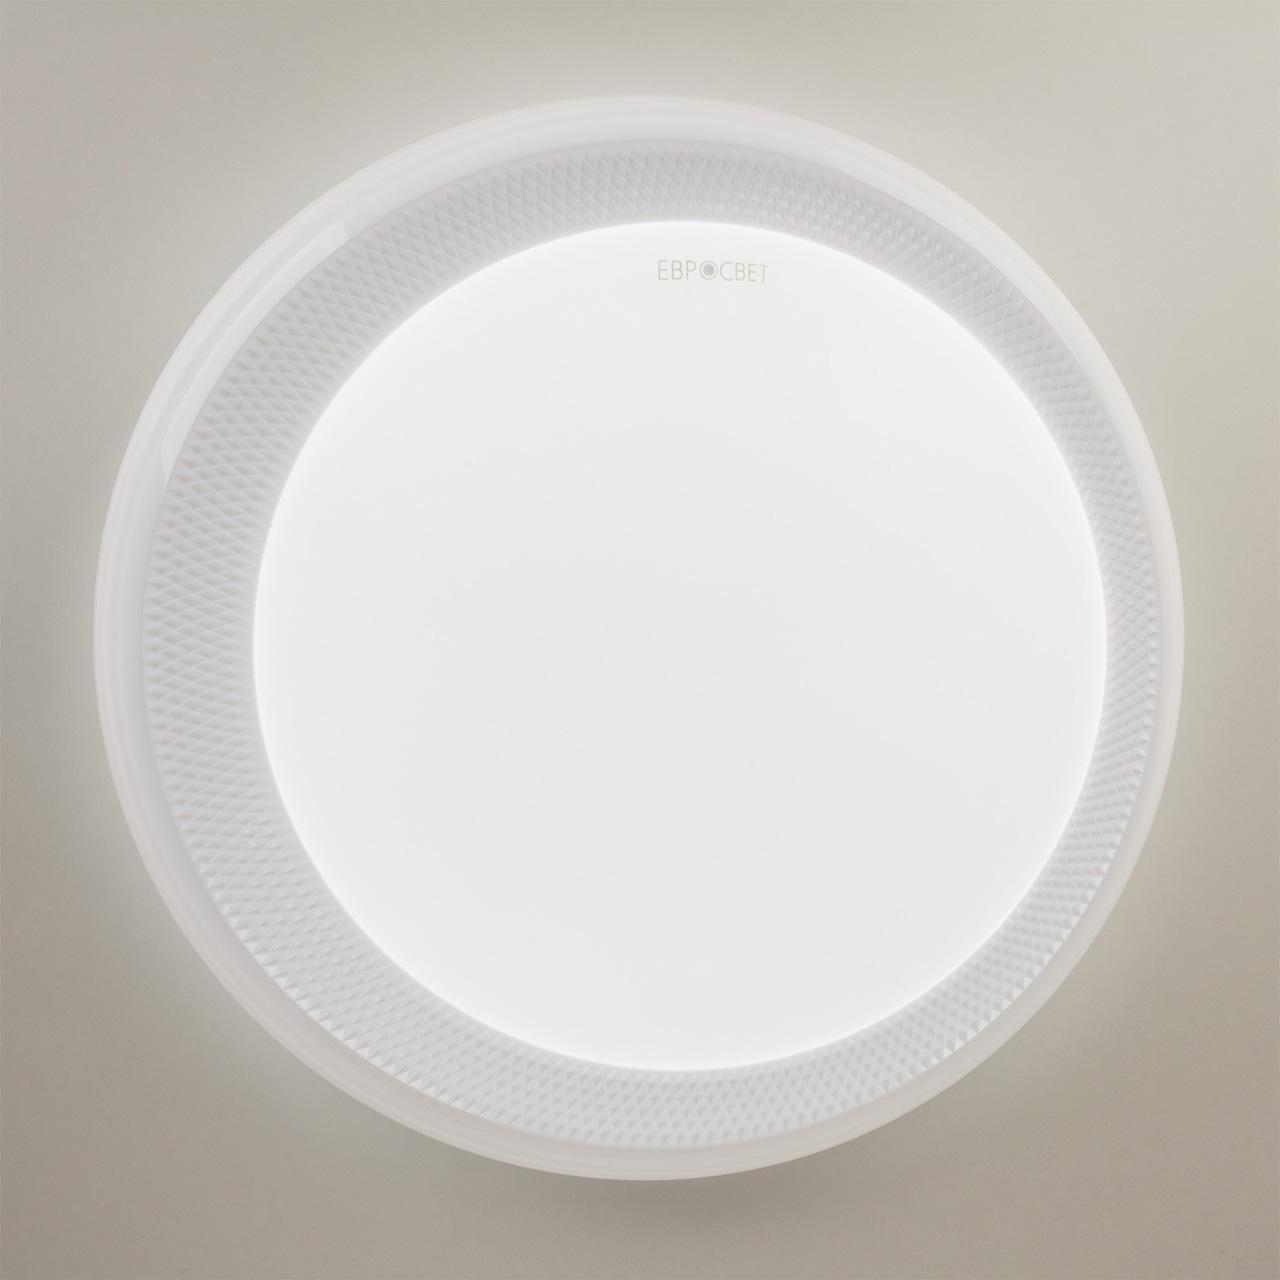 Потолочный светодиодный светильник с пультом ДУ Eurosvet Weave 40013/1 LED белый